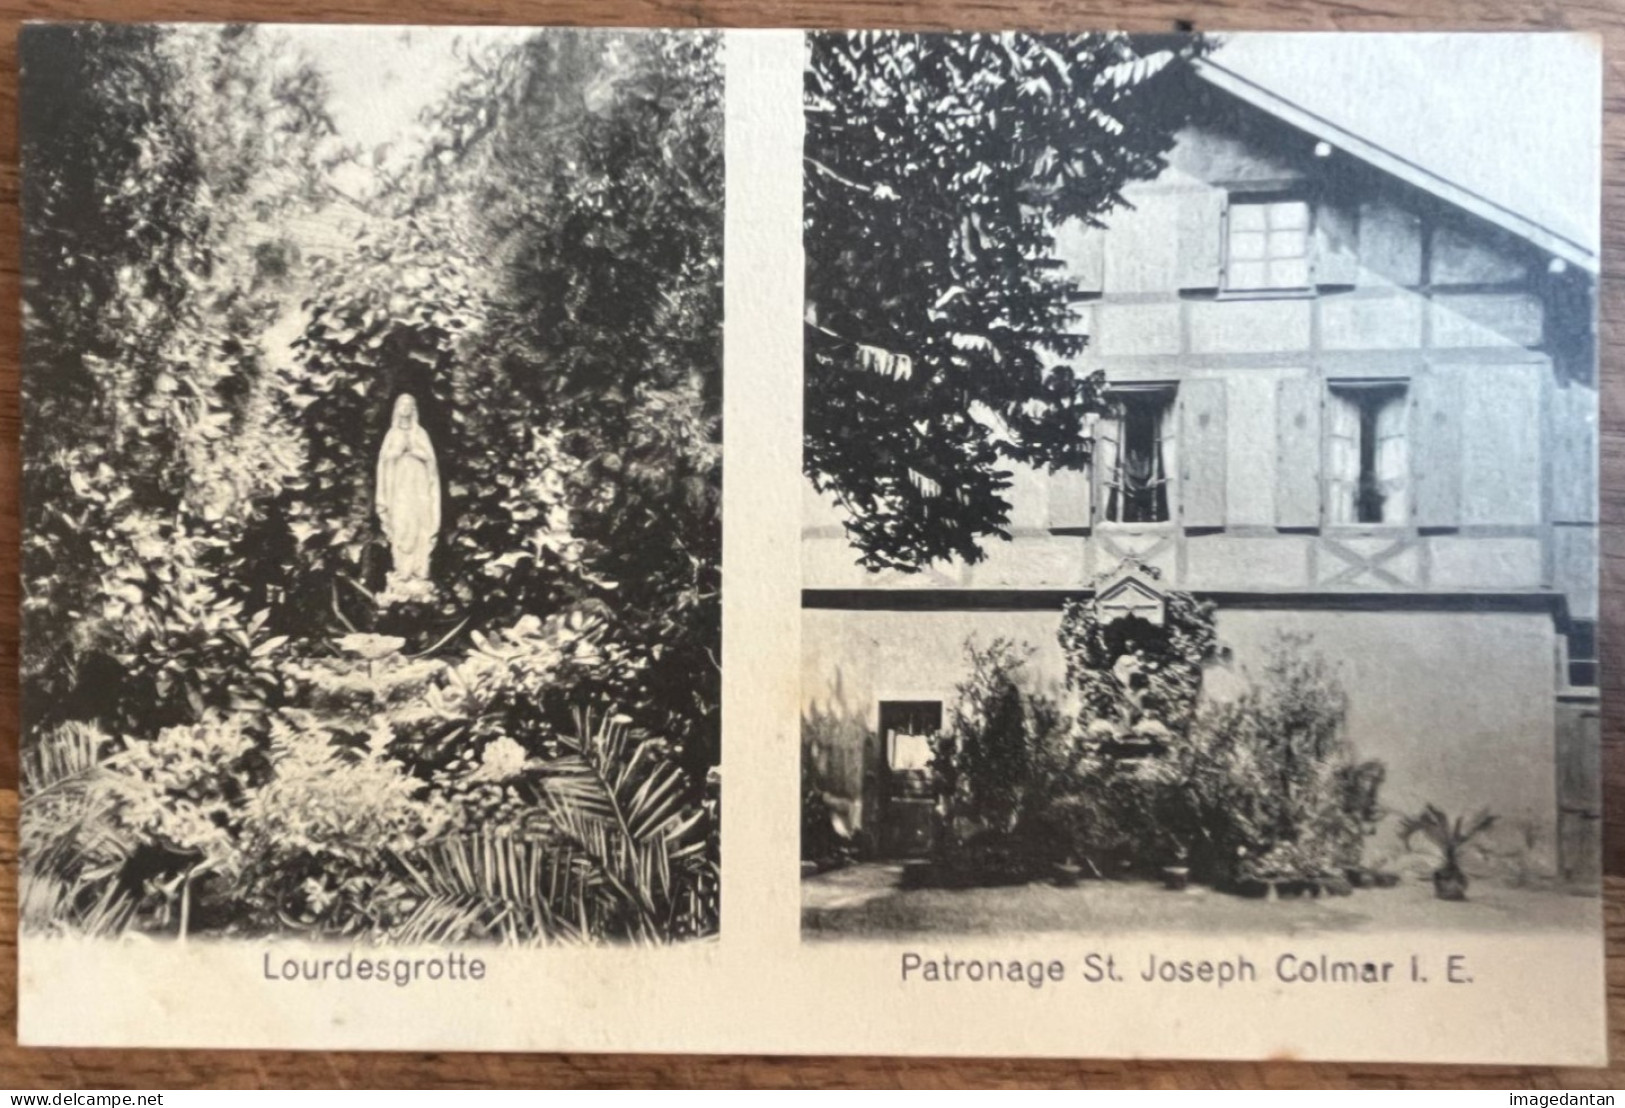 Colmar - Patronage St. Joseph - Lourdesgrotte - Verlag S. Schoy, Hofphot., Colmar - Colmar